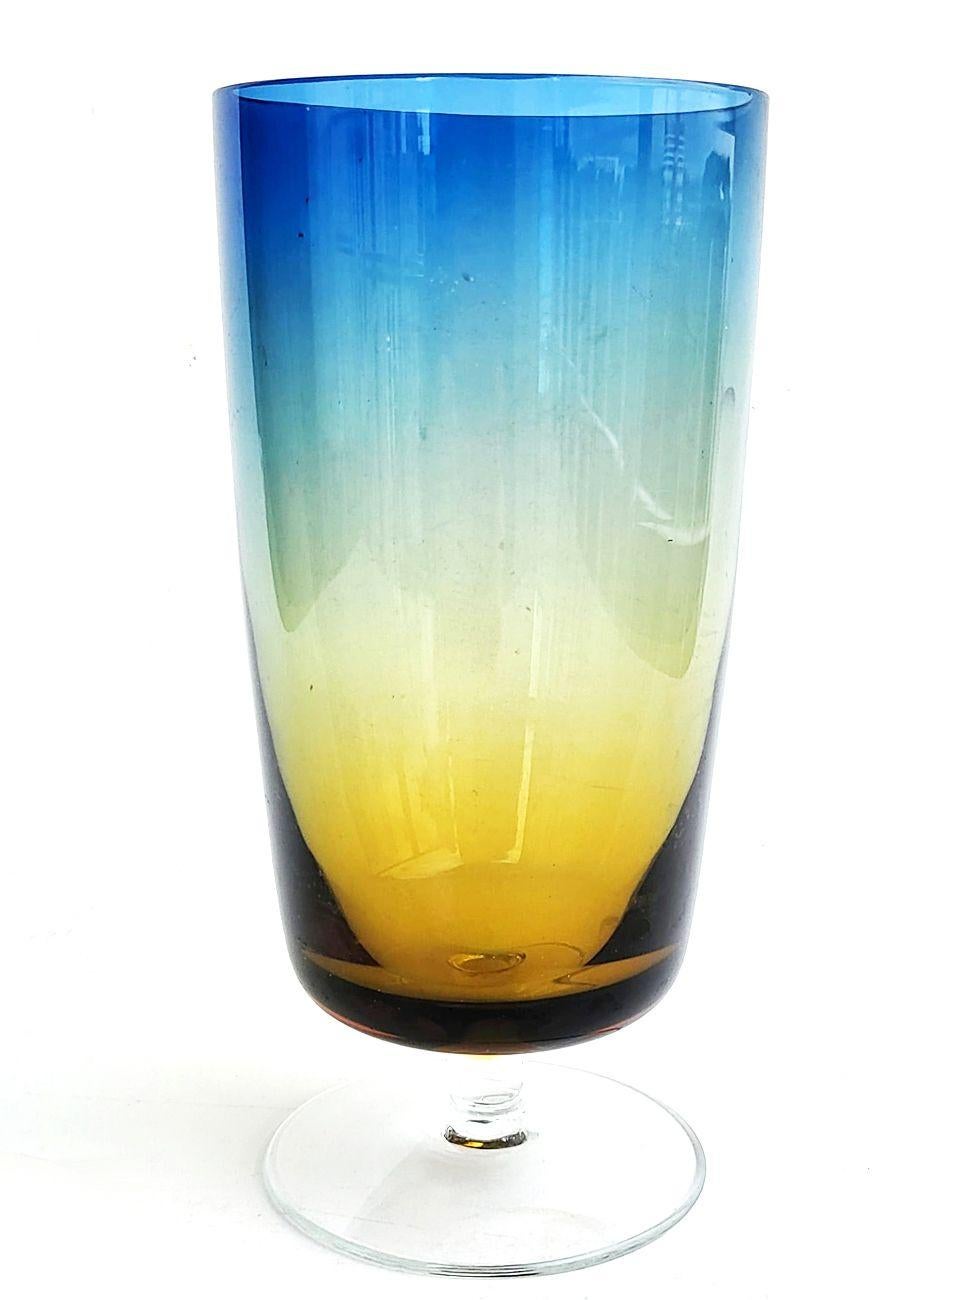 Grands gobelets à bal en bleurina de Denby Milnor Suède des années 1960, lot de 8

Nous présentons 8 grands verres à pied Denby Milnor Sweden 'Bluerina' du milieu du 20e siècle, fabriqués en Pologne par Krosno Glass Company et conçus par l'artiste